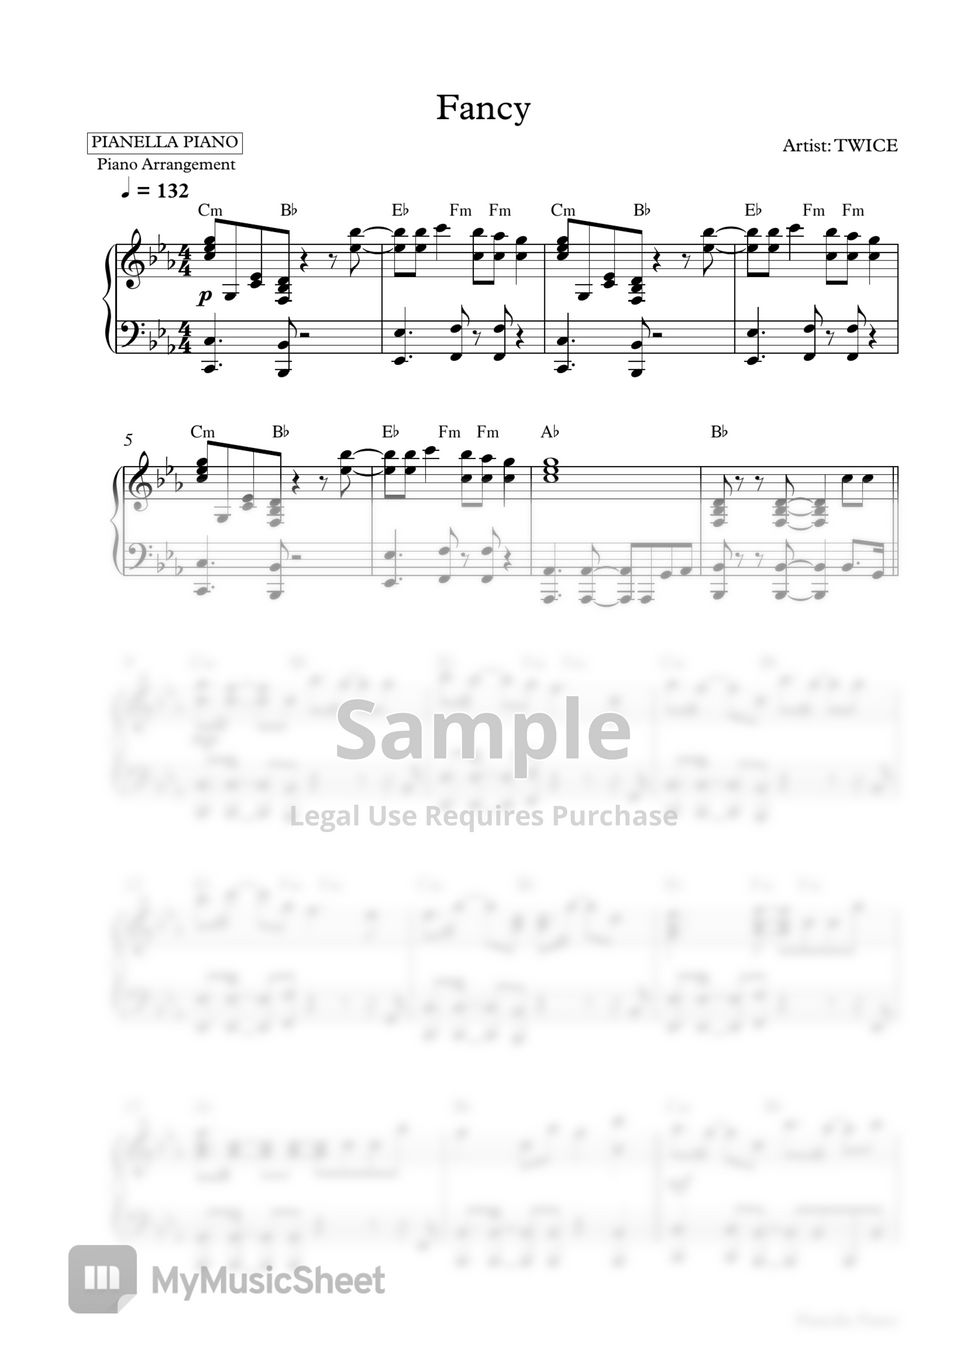 TWICE - FANCY (Piano Sheet) by Pianella Piano